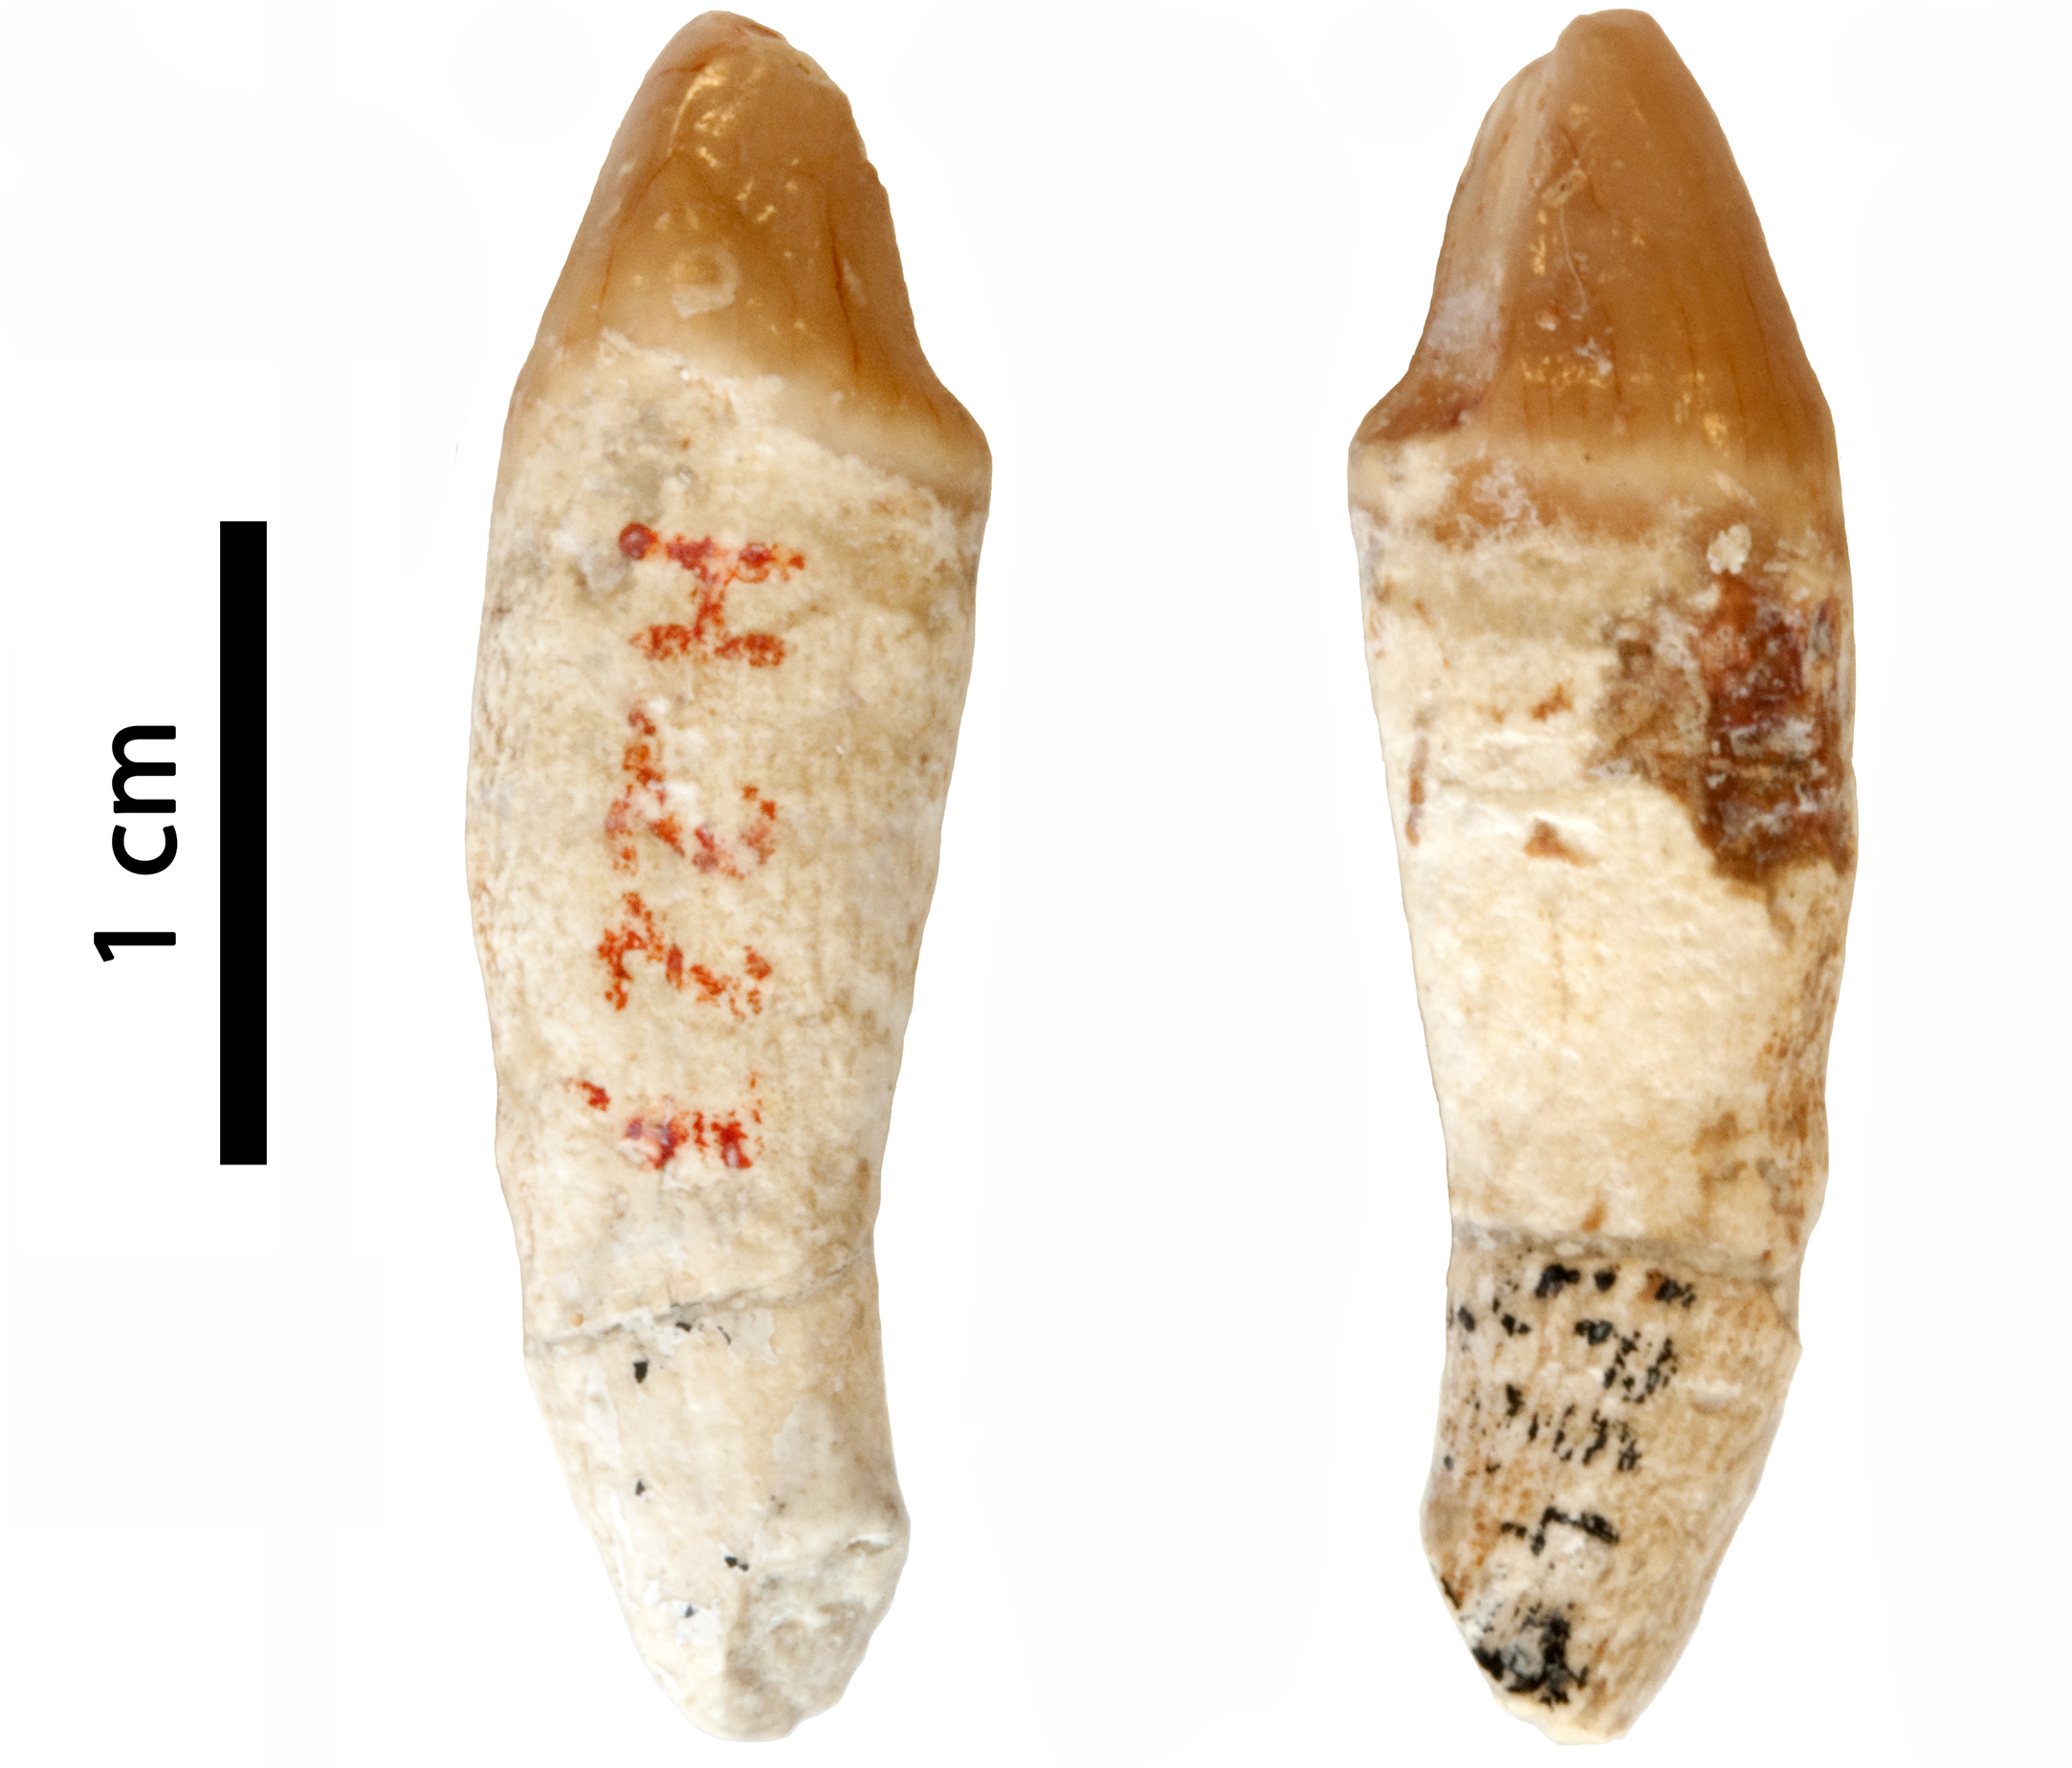 Canina inferior esquerra d’una femella de primat hominoïdeu trobada a Can Mata 1 a principis de la dècada de 1970,. Inicialment atribuïda a Hispanopithecus laietanus, actualment no es pot assignar amb certesa a cap gènere d’hominoïdeu conegut (imatge modificada a partir d'Alba et al., 2022).